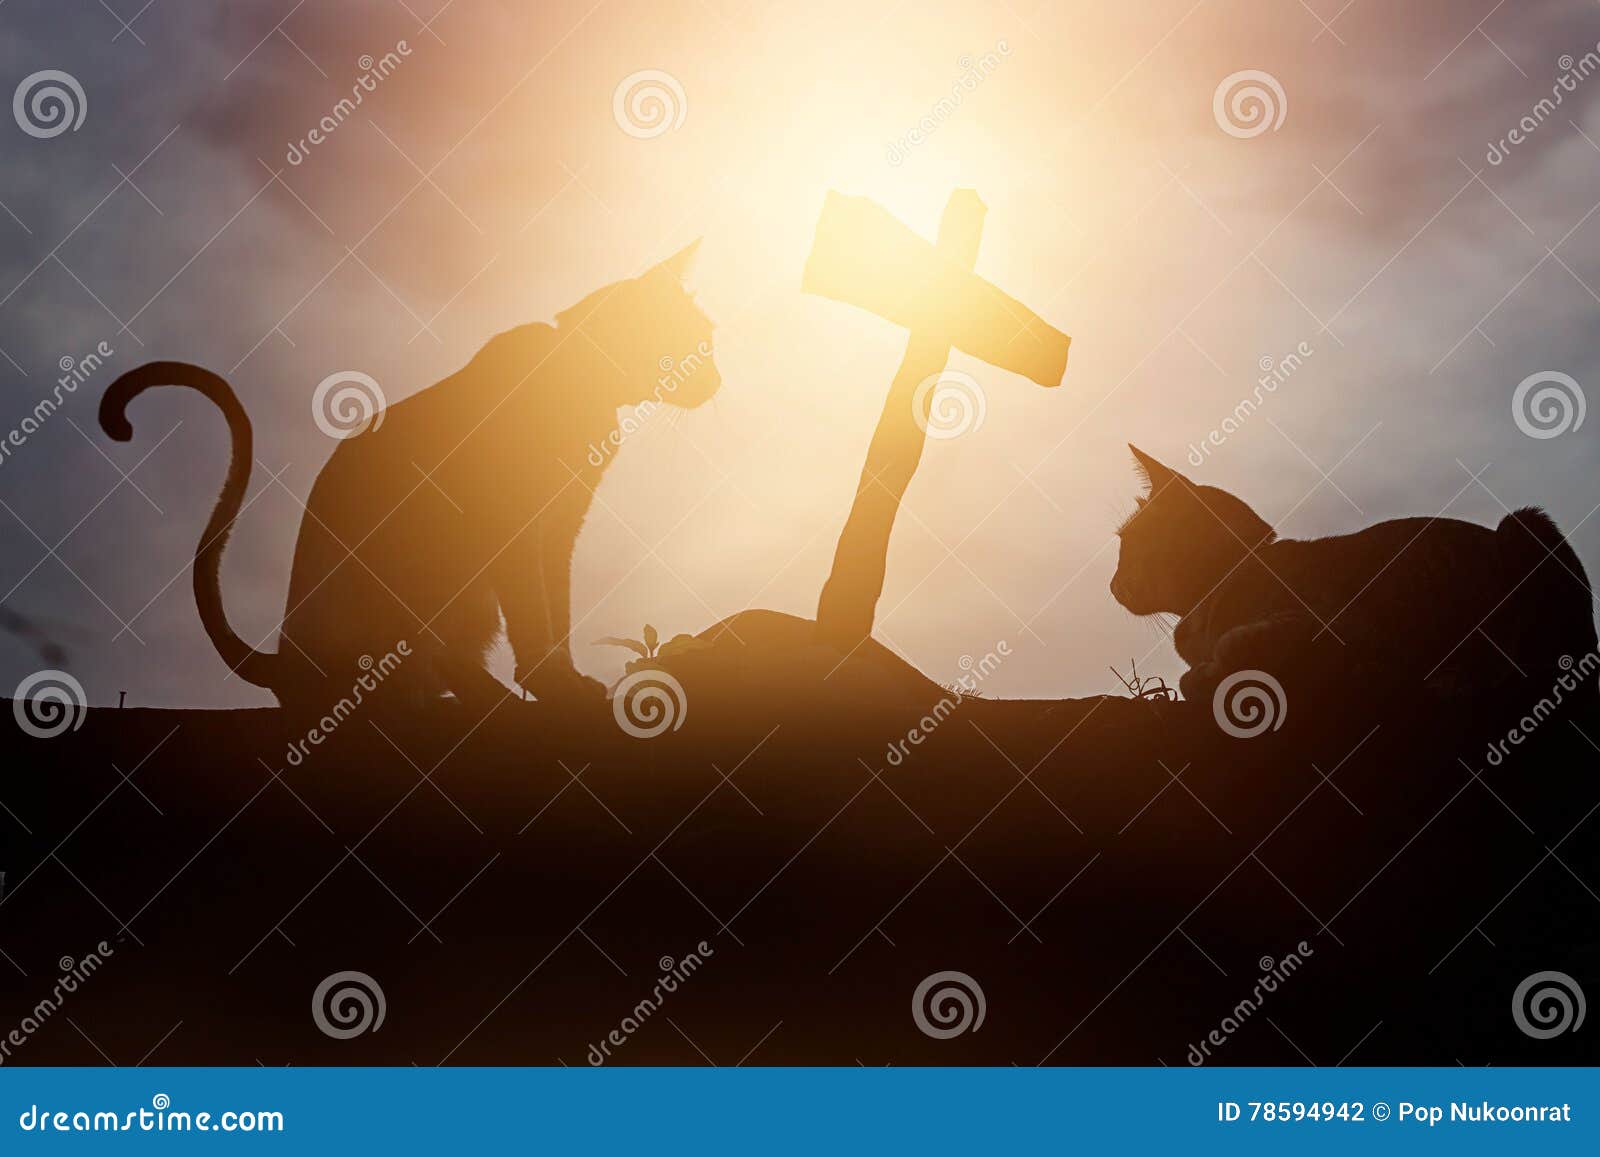 Tumba de cruz para el animal gato silueta